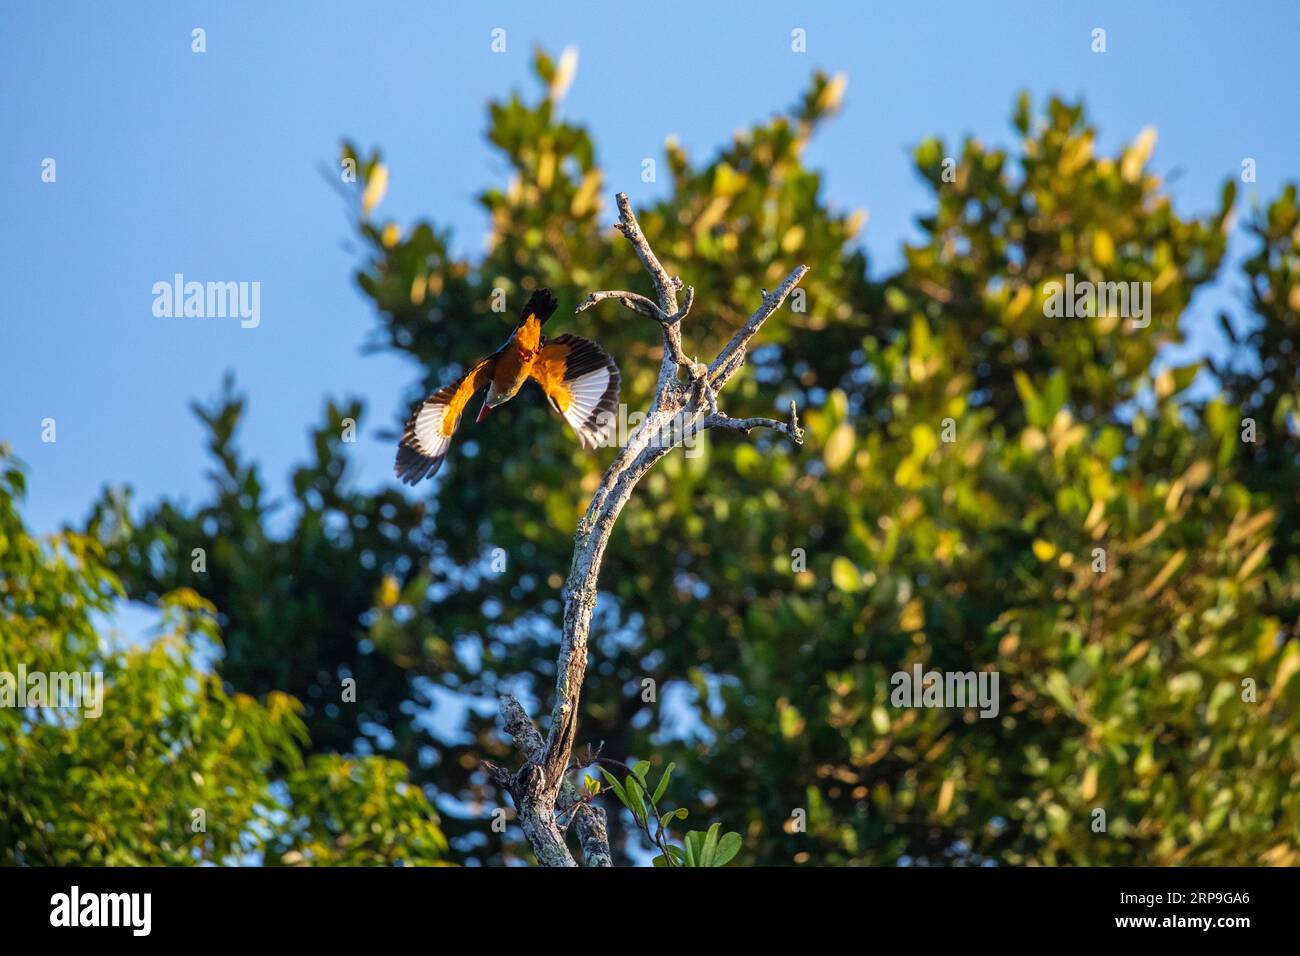 Sundarbans, Bangladesch: Eisvogel mit schwarzer Kappe (Halcyon pileata) auf einem Baum in Sundarbans, UNESCO-Weltkulturerbe und Naturschutzgebiet. IT i Stockfoto